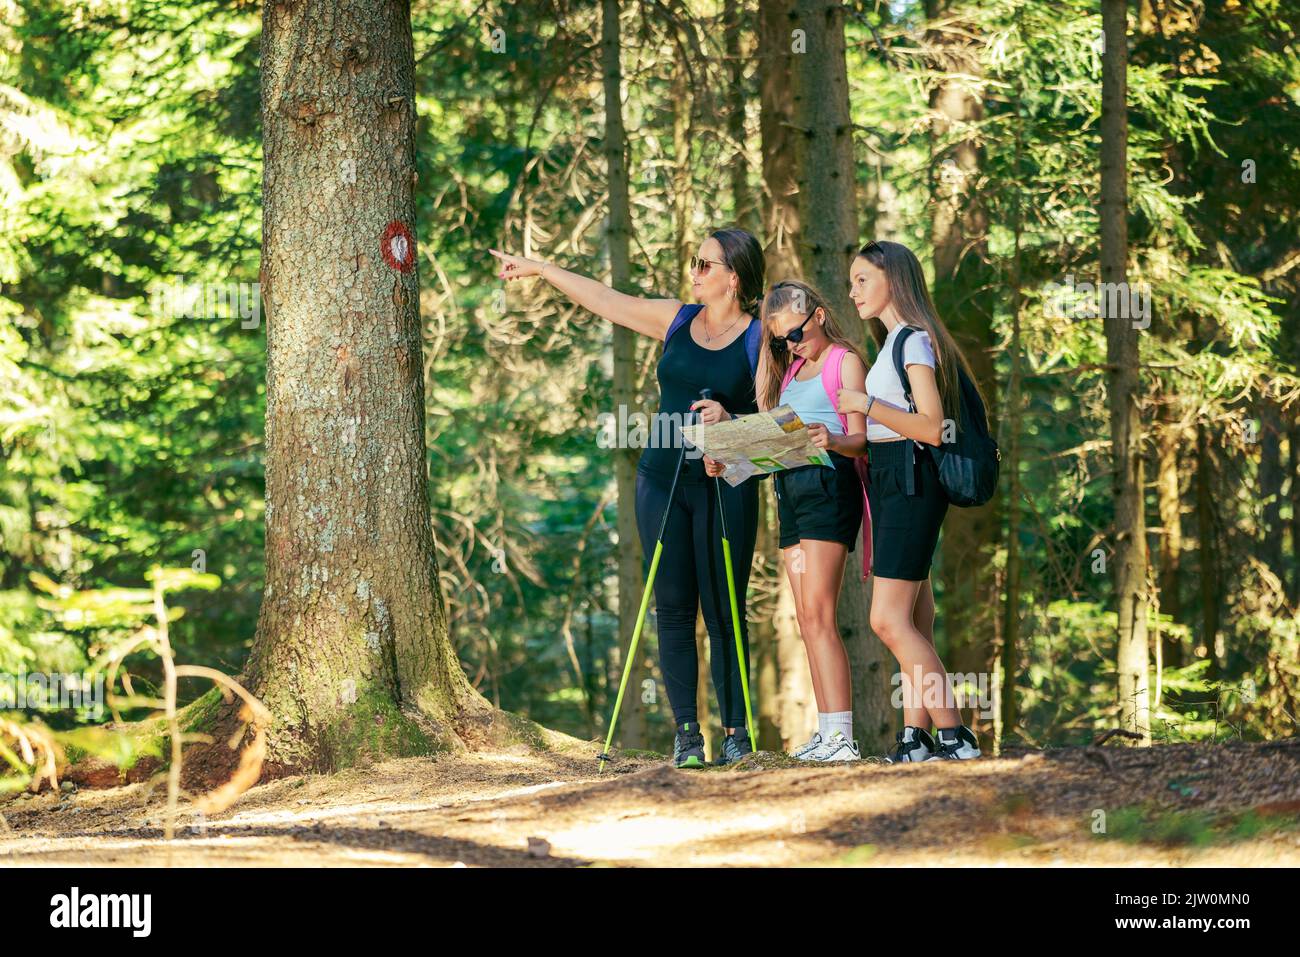 Mujer señala su mano en un signo de sendero de senderismo en un árbol, mientras que las chicas adolescentes estudian un mapa de senderismo Foto de stock